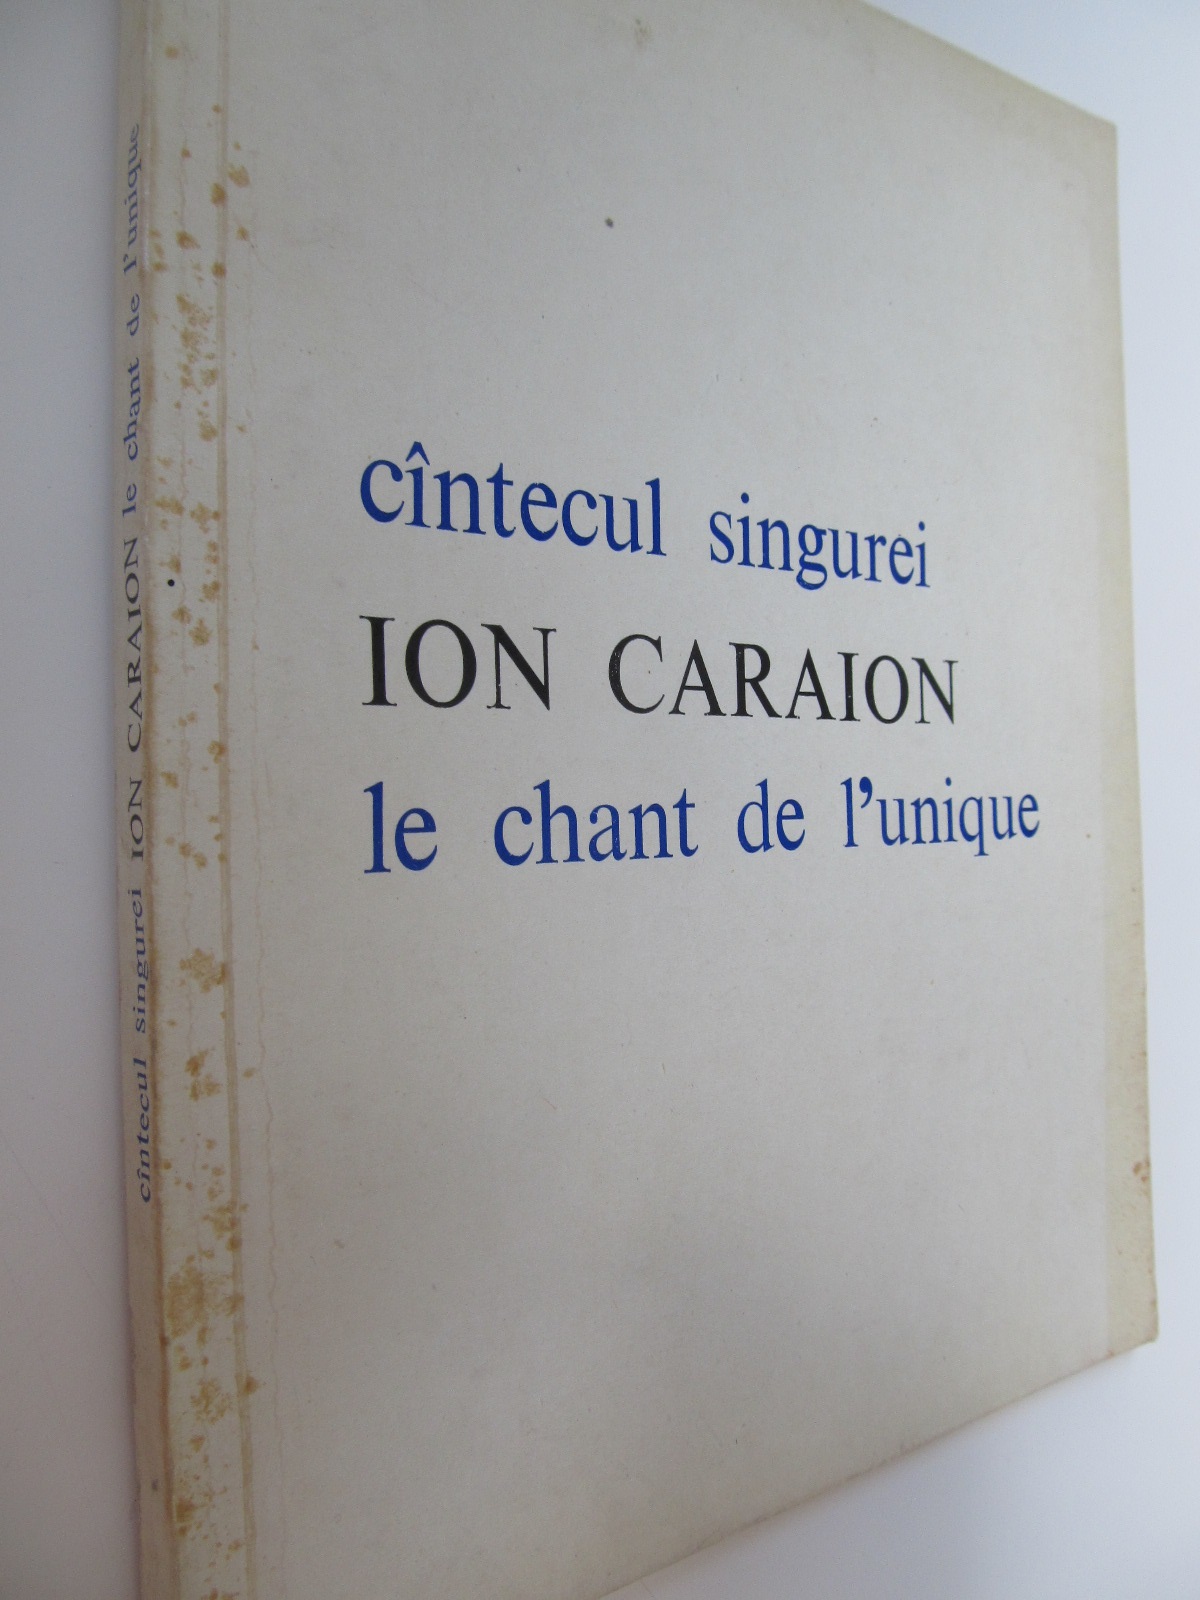 Cantecul singurei - Le chant de l' unique (bilingv) - Ion Caraion | Detalii carte